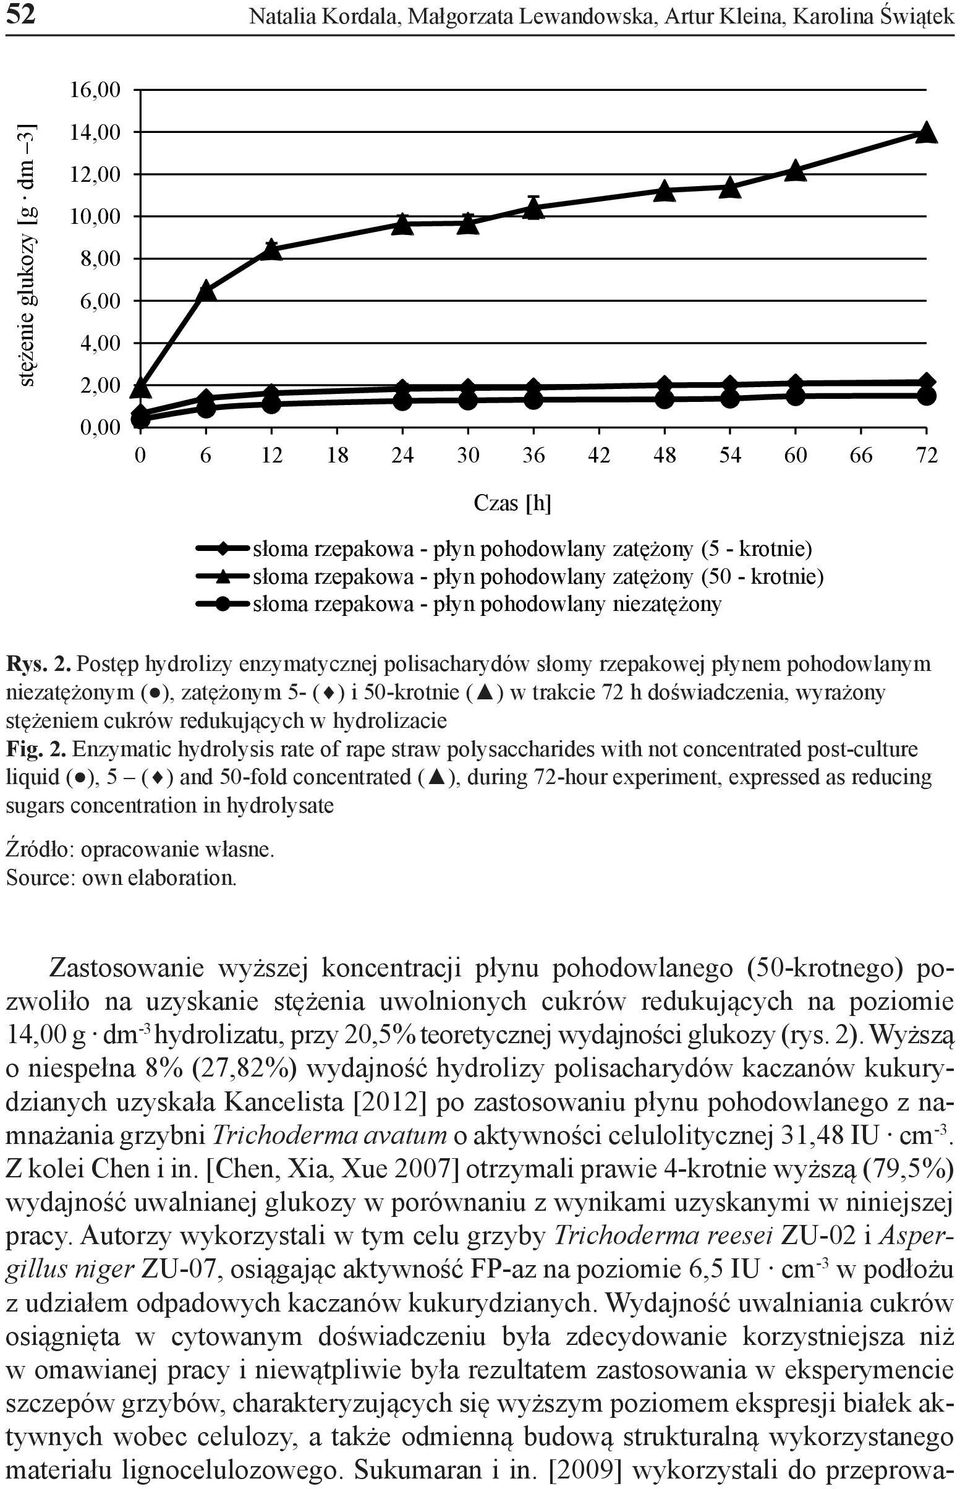 Postęp hydrolizy enzymatycznej polisacharydów słomy rzepakowej płynem pohodowlanym niezatężonym ( ), zatężonym 5- ( ) i 50-krotnie ( ) w trakcie 72 h doświadczenia, wyrażony stężeniem cukrów